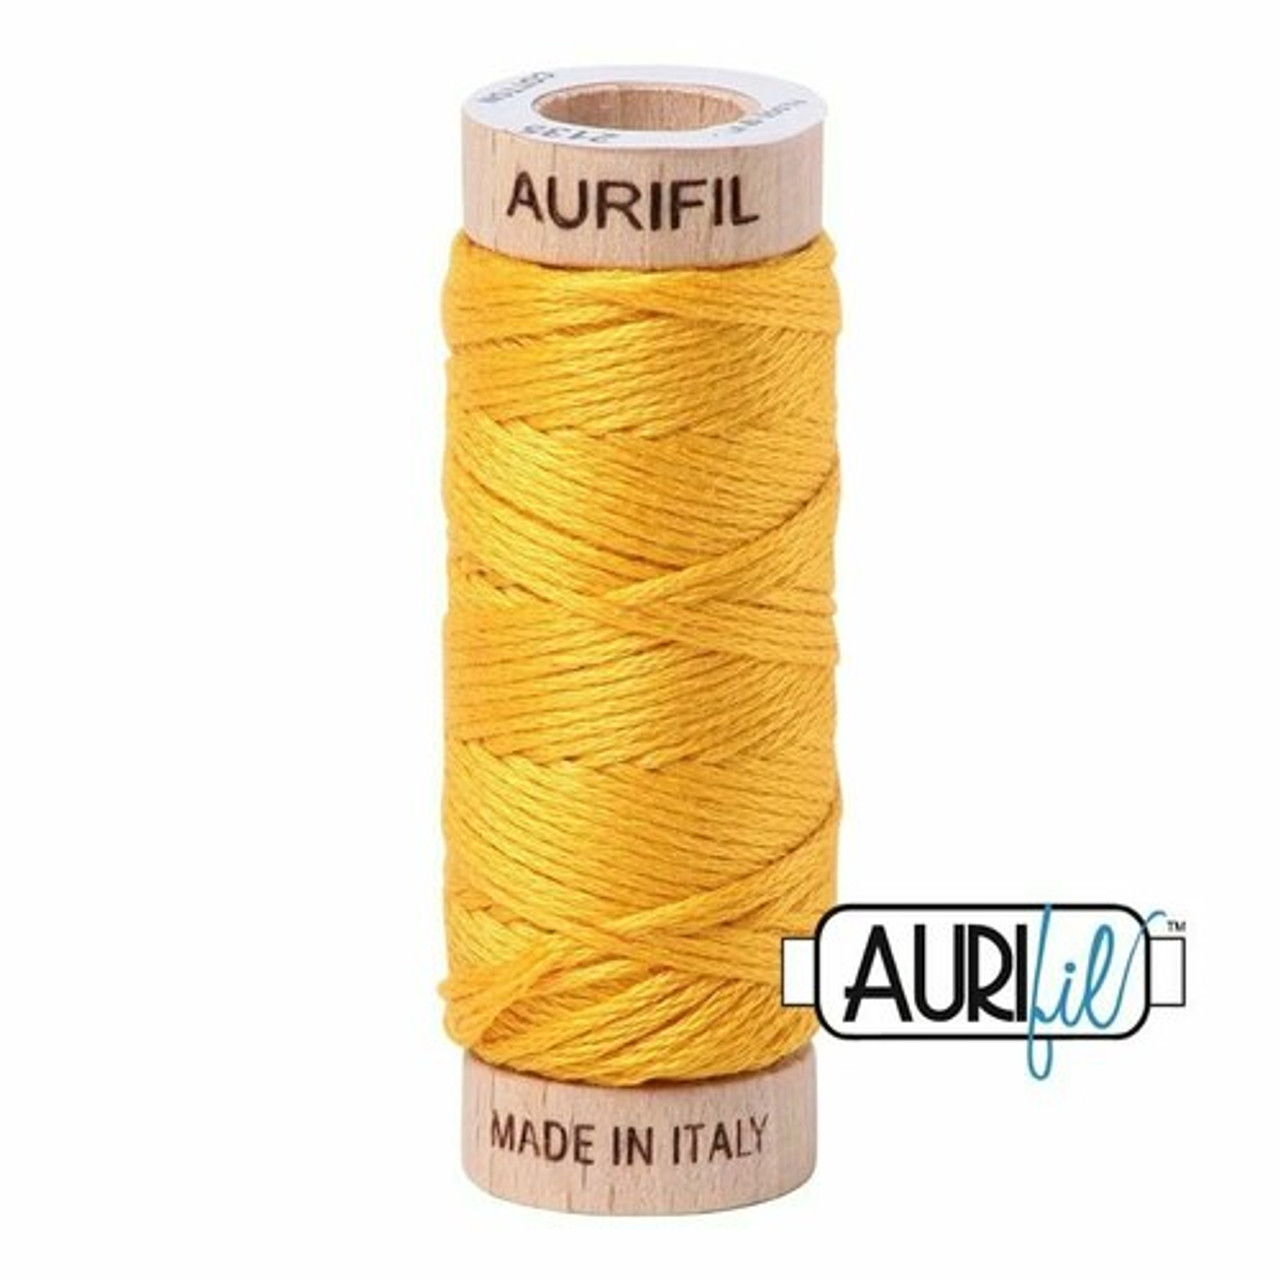 Aurifil 2135 - Yellow